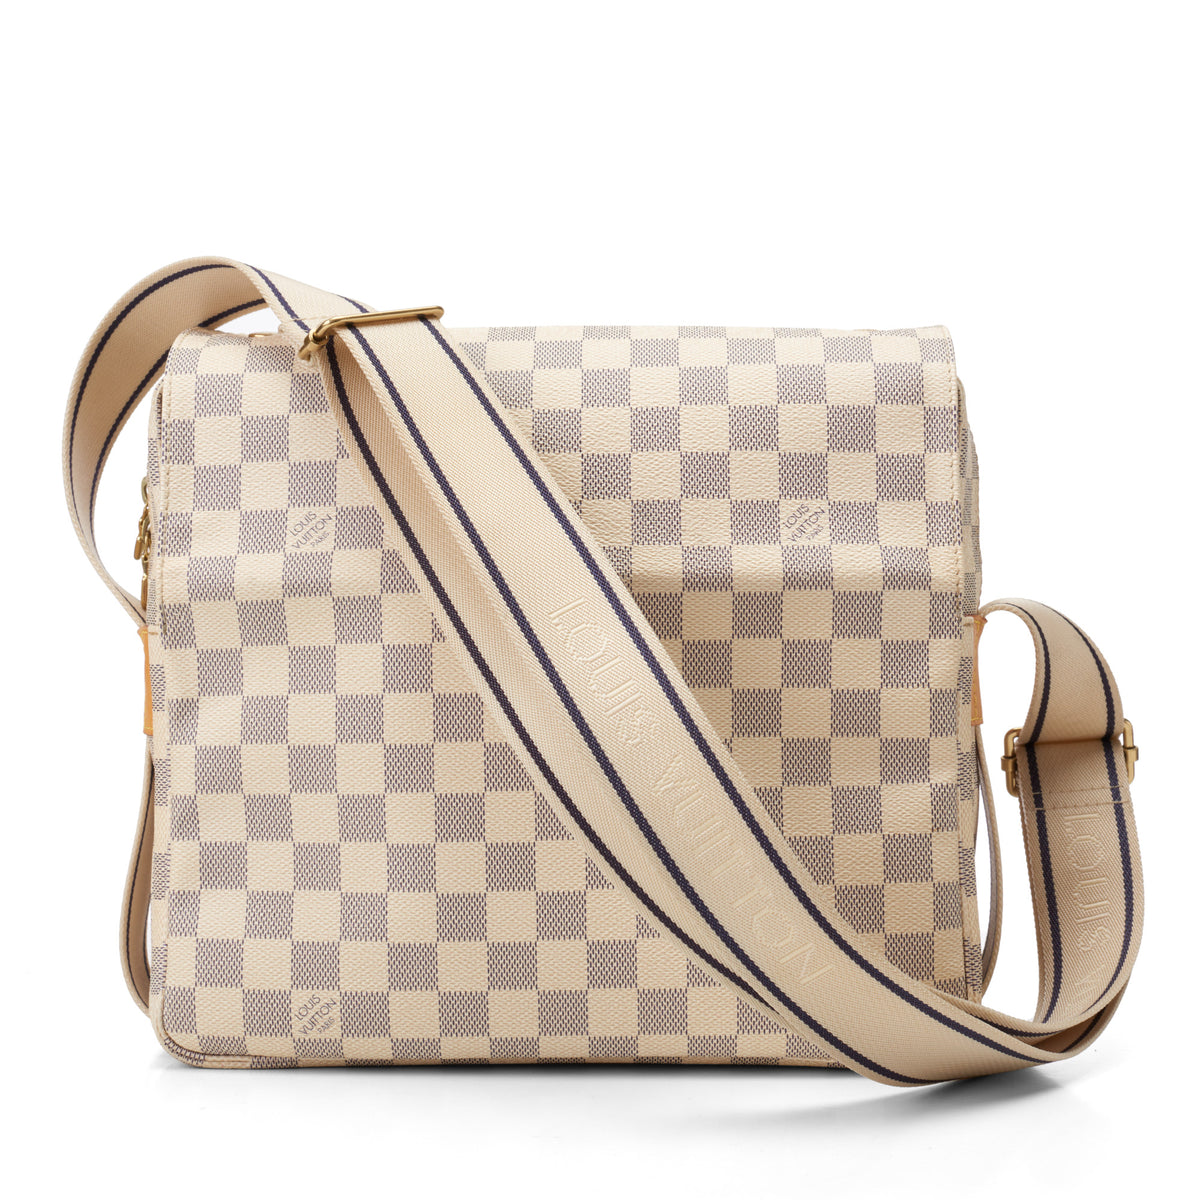 Louis Vuitton Canvas Messenger/Shoulder Bags for Men for sale